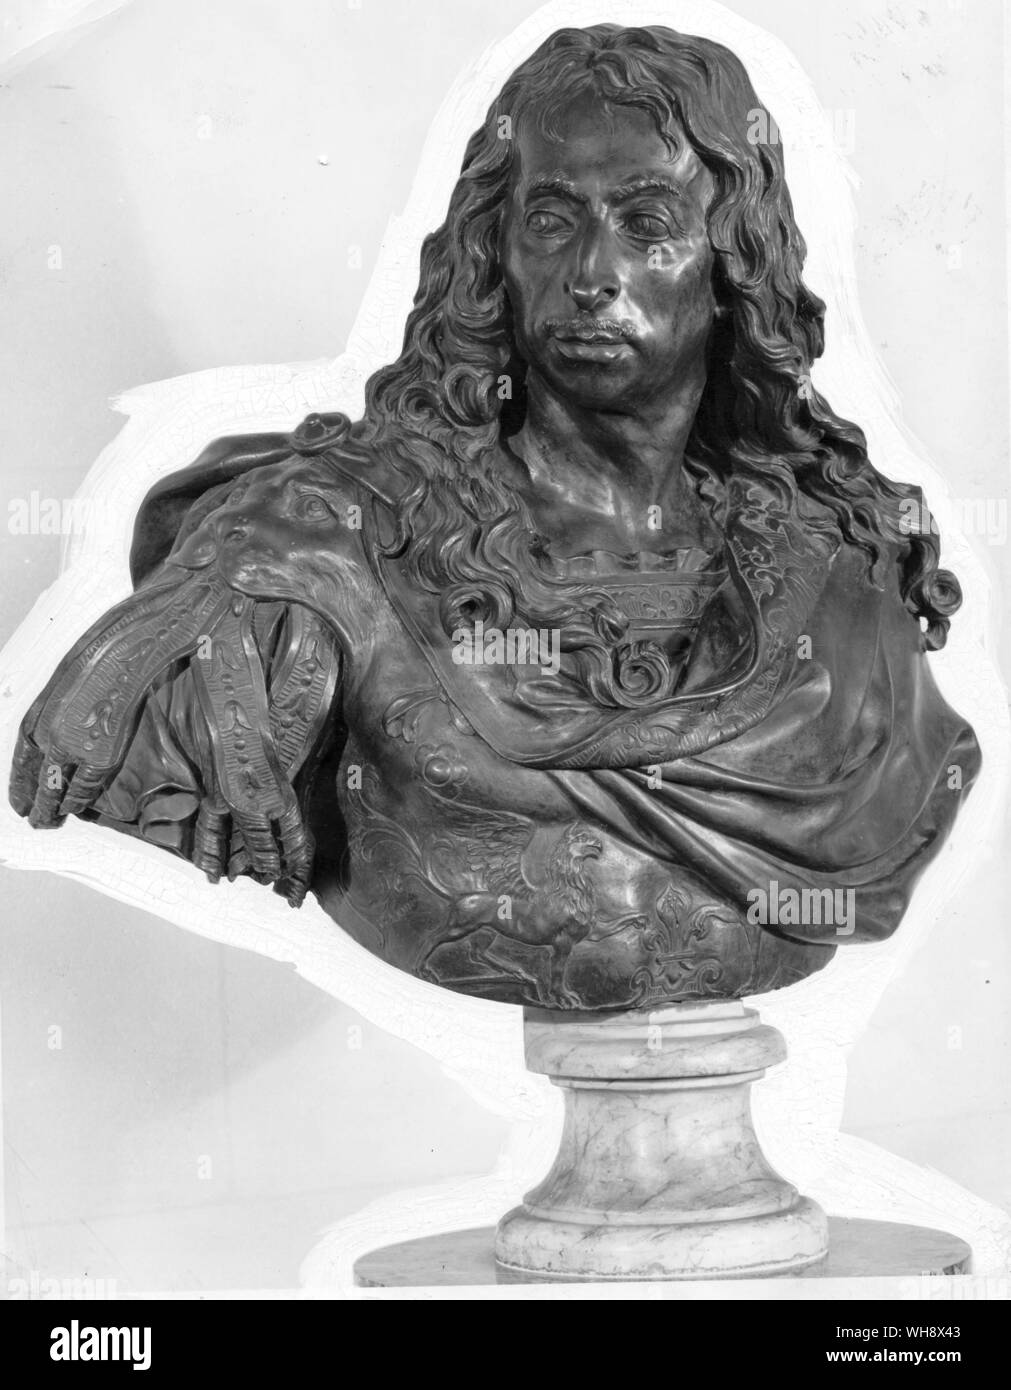 Louis II, Prince de Condé, connu sous le nom de Grand Condé, par Antoine Coysevox, 1688 Banque D'Images